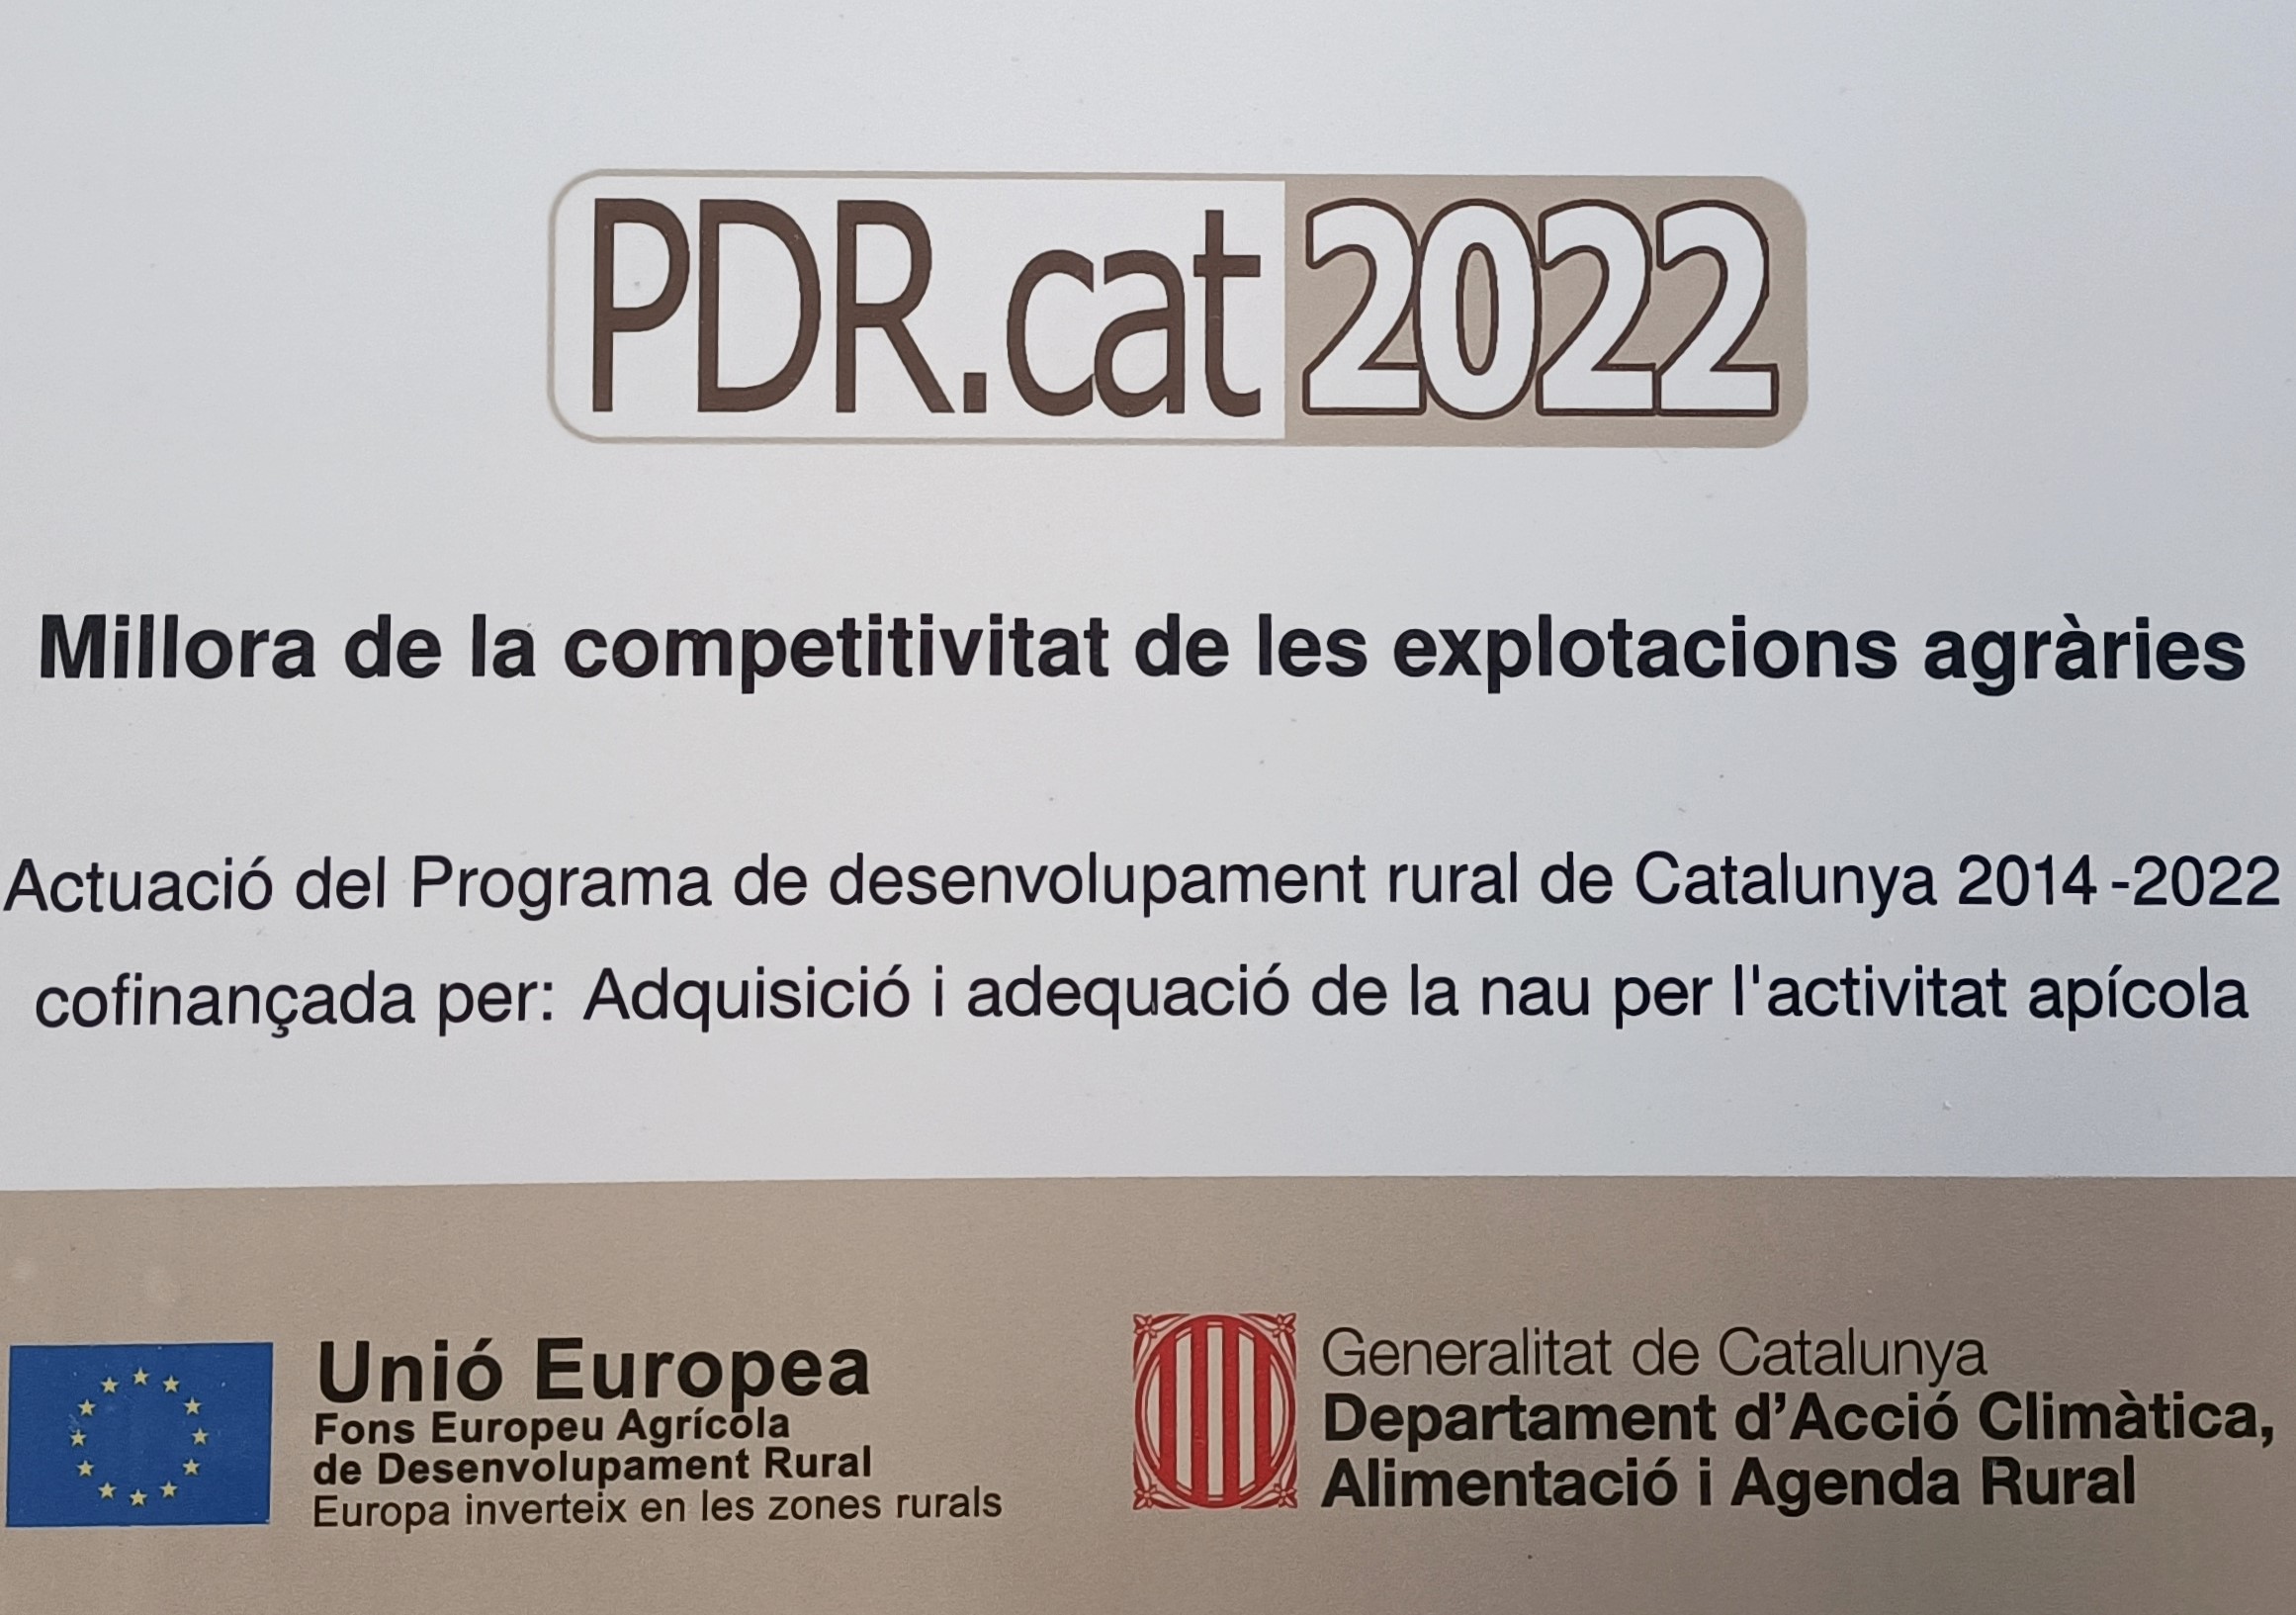 PDR.CAT 2022